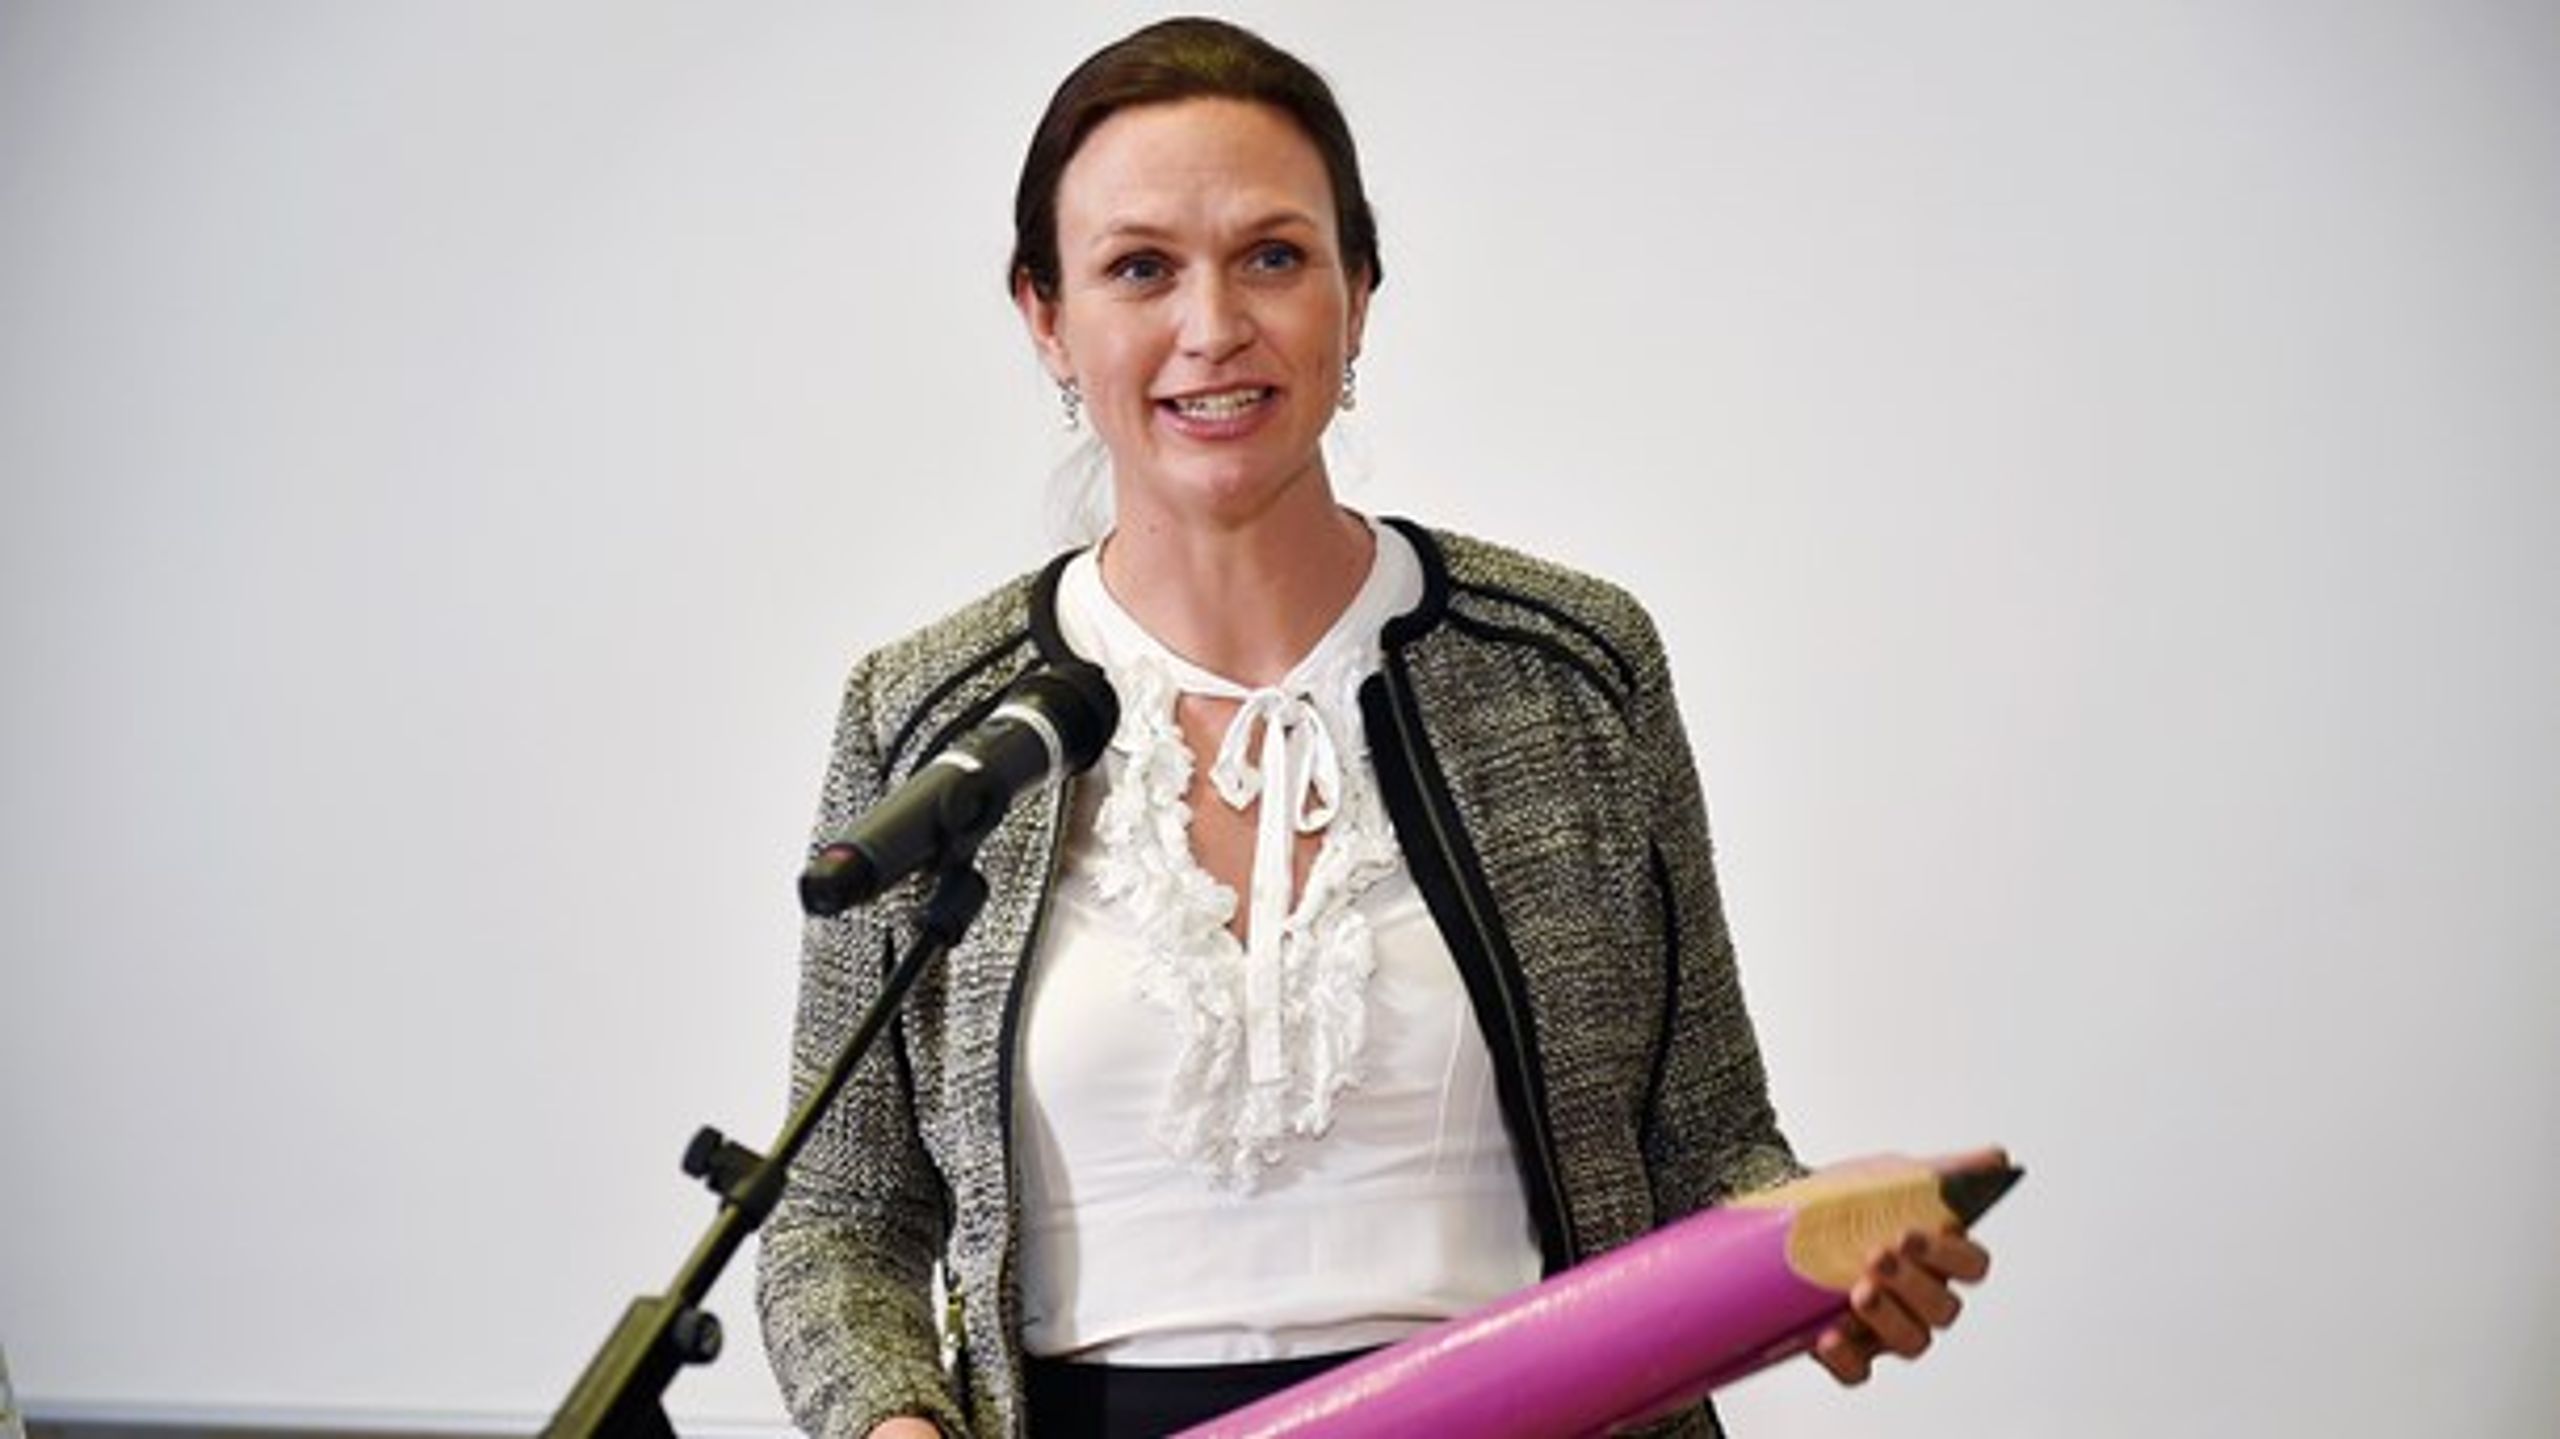 Den nye undervisningsminister, Merete Riisager, fik en overdimensioneret blyant i gave, da hun mandag overtog Undervisningsministeriet fra Ellen Trane Nørby (V).